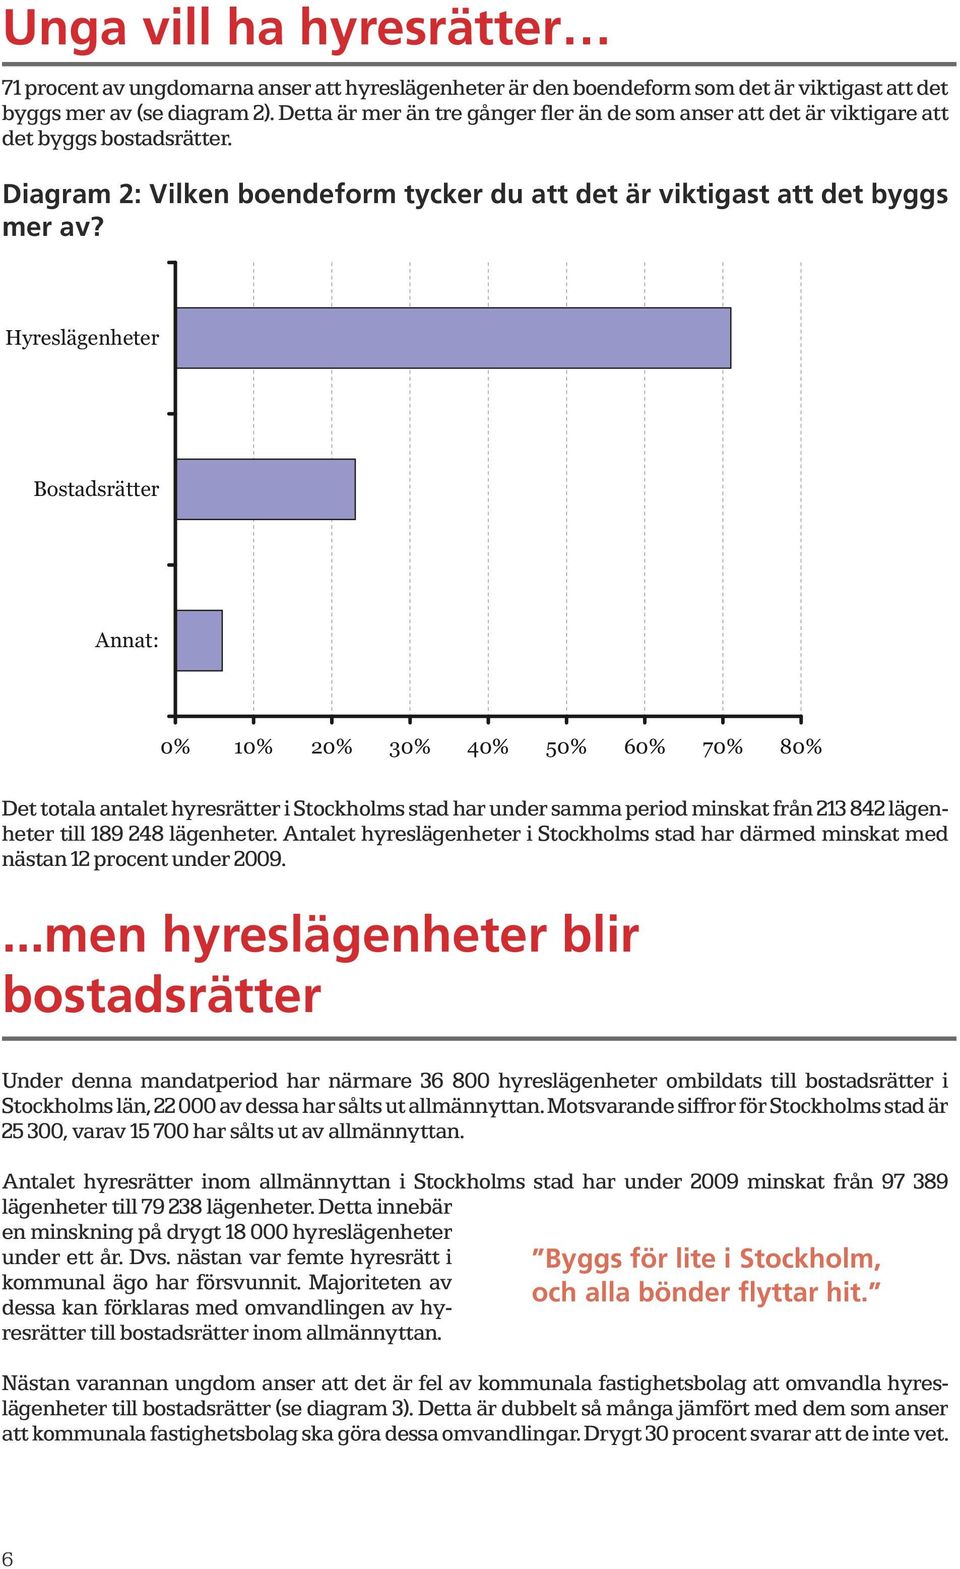 Hyreslägenheter Bostadsrätter Annat: 0% 10% 20% 30% 40% 50% 60% 70% 80% Det totala antalet hyresrätter i Stockholms stad har under samma period minskat från 213 842 lägenheter till 189 248 lägenheter.